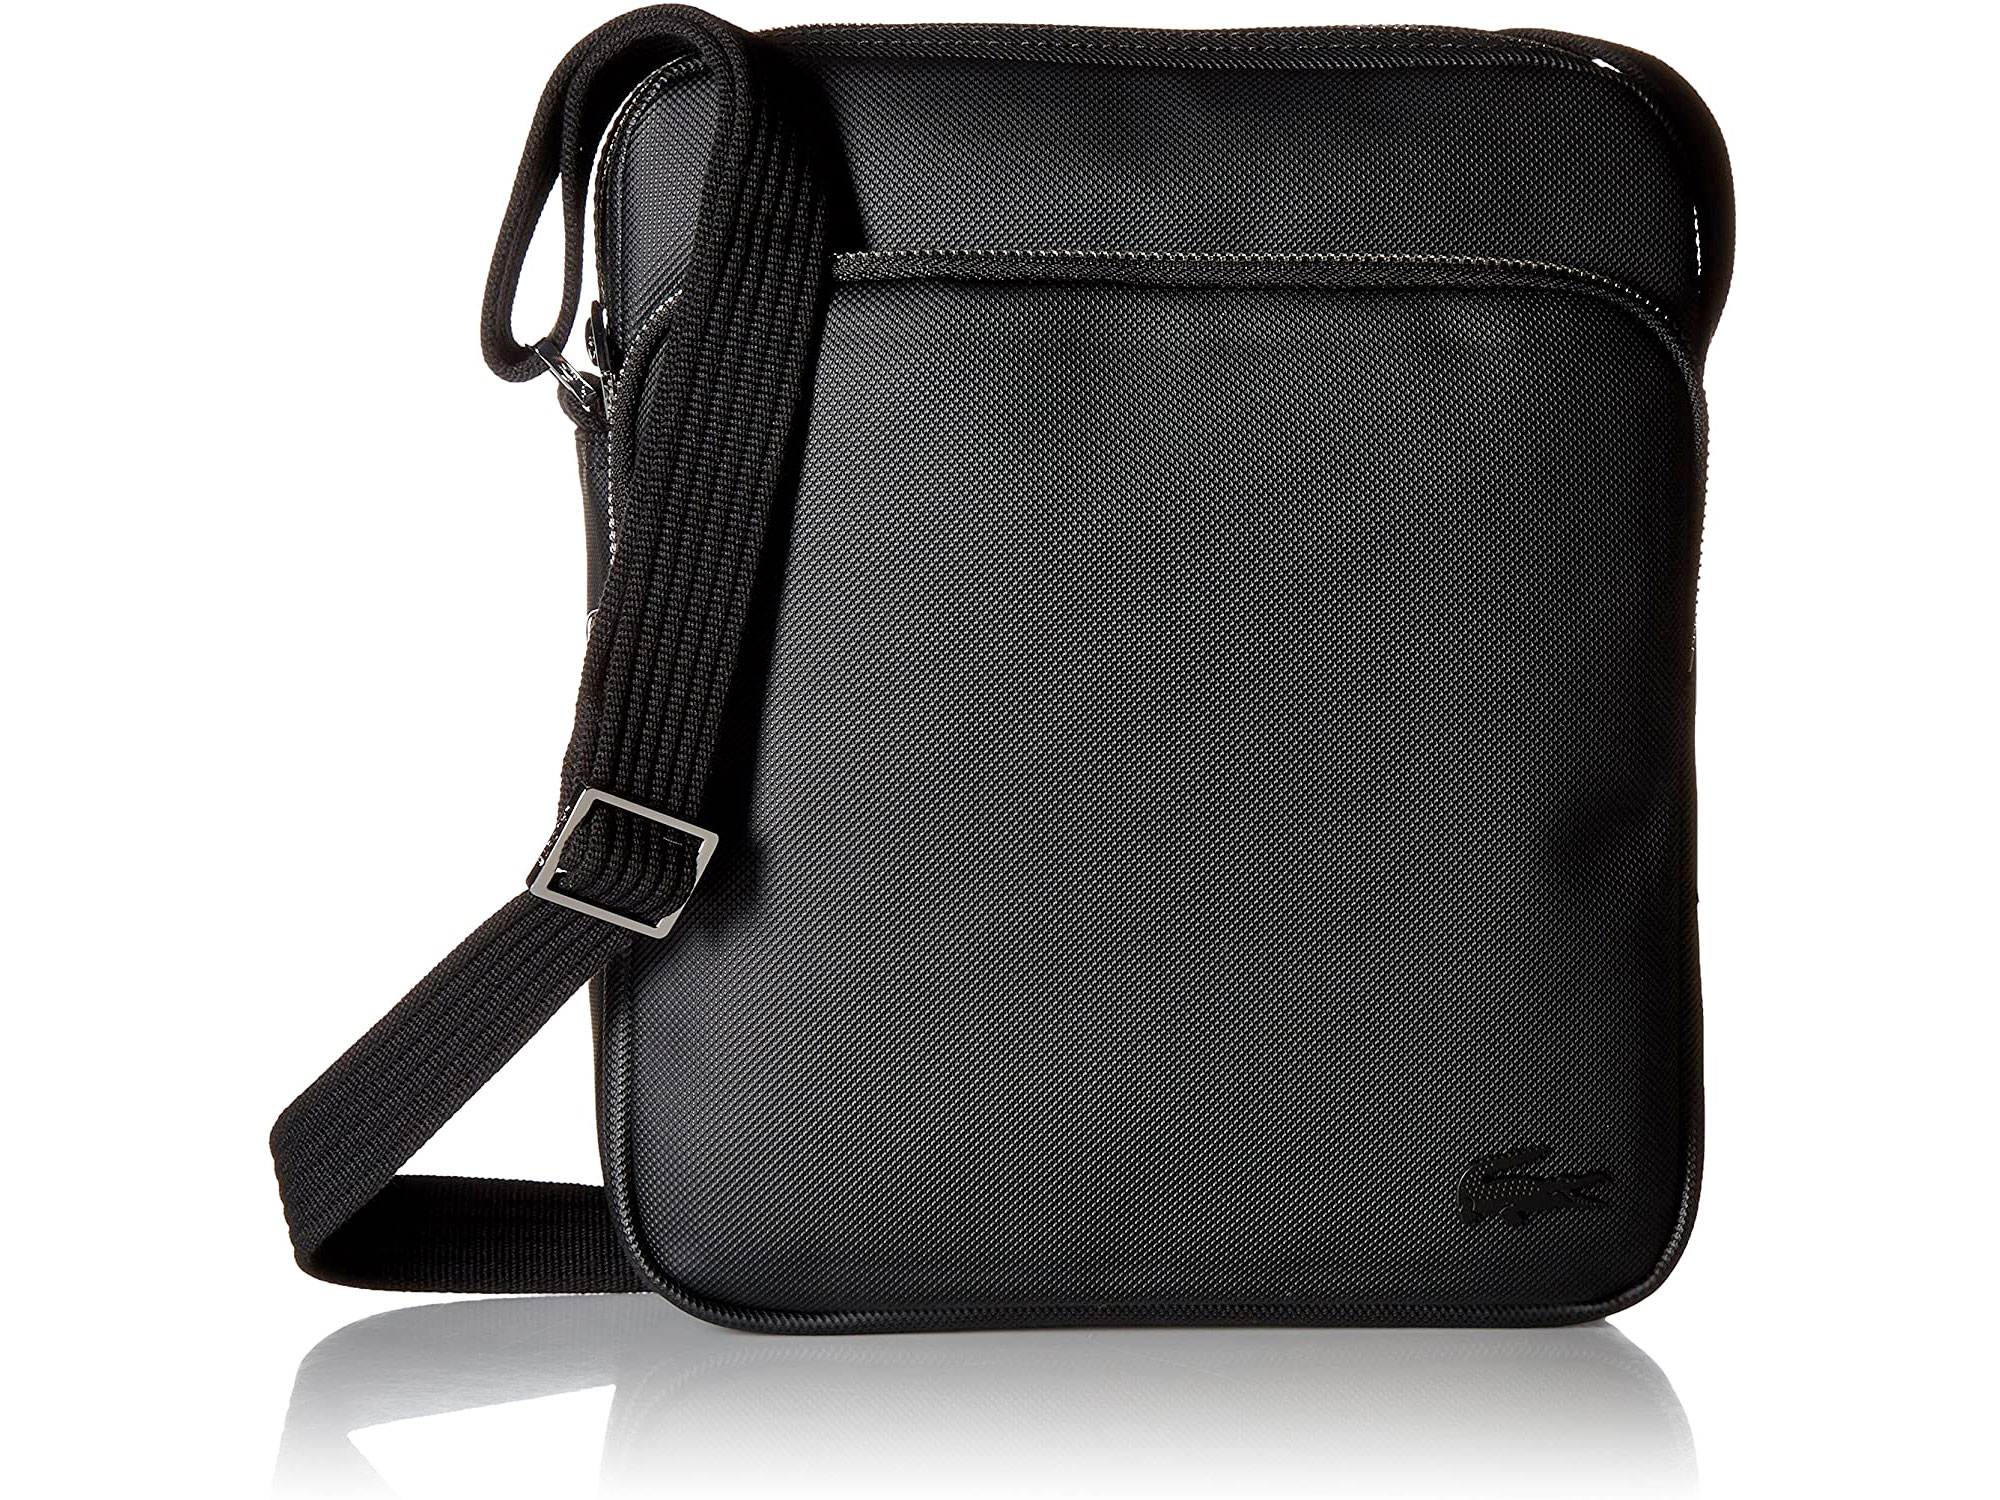 Amazon：Lacoste Mens Classic Petit Pique Double Bag只賣$55.39